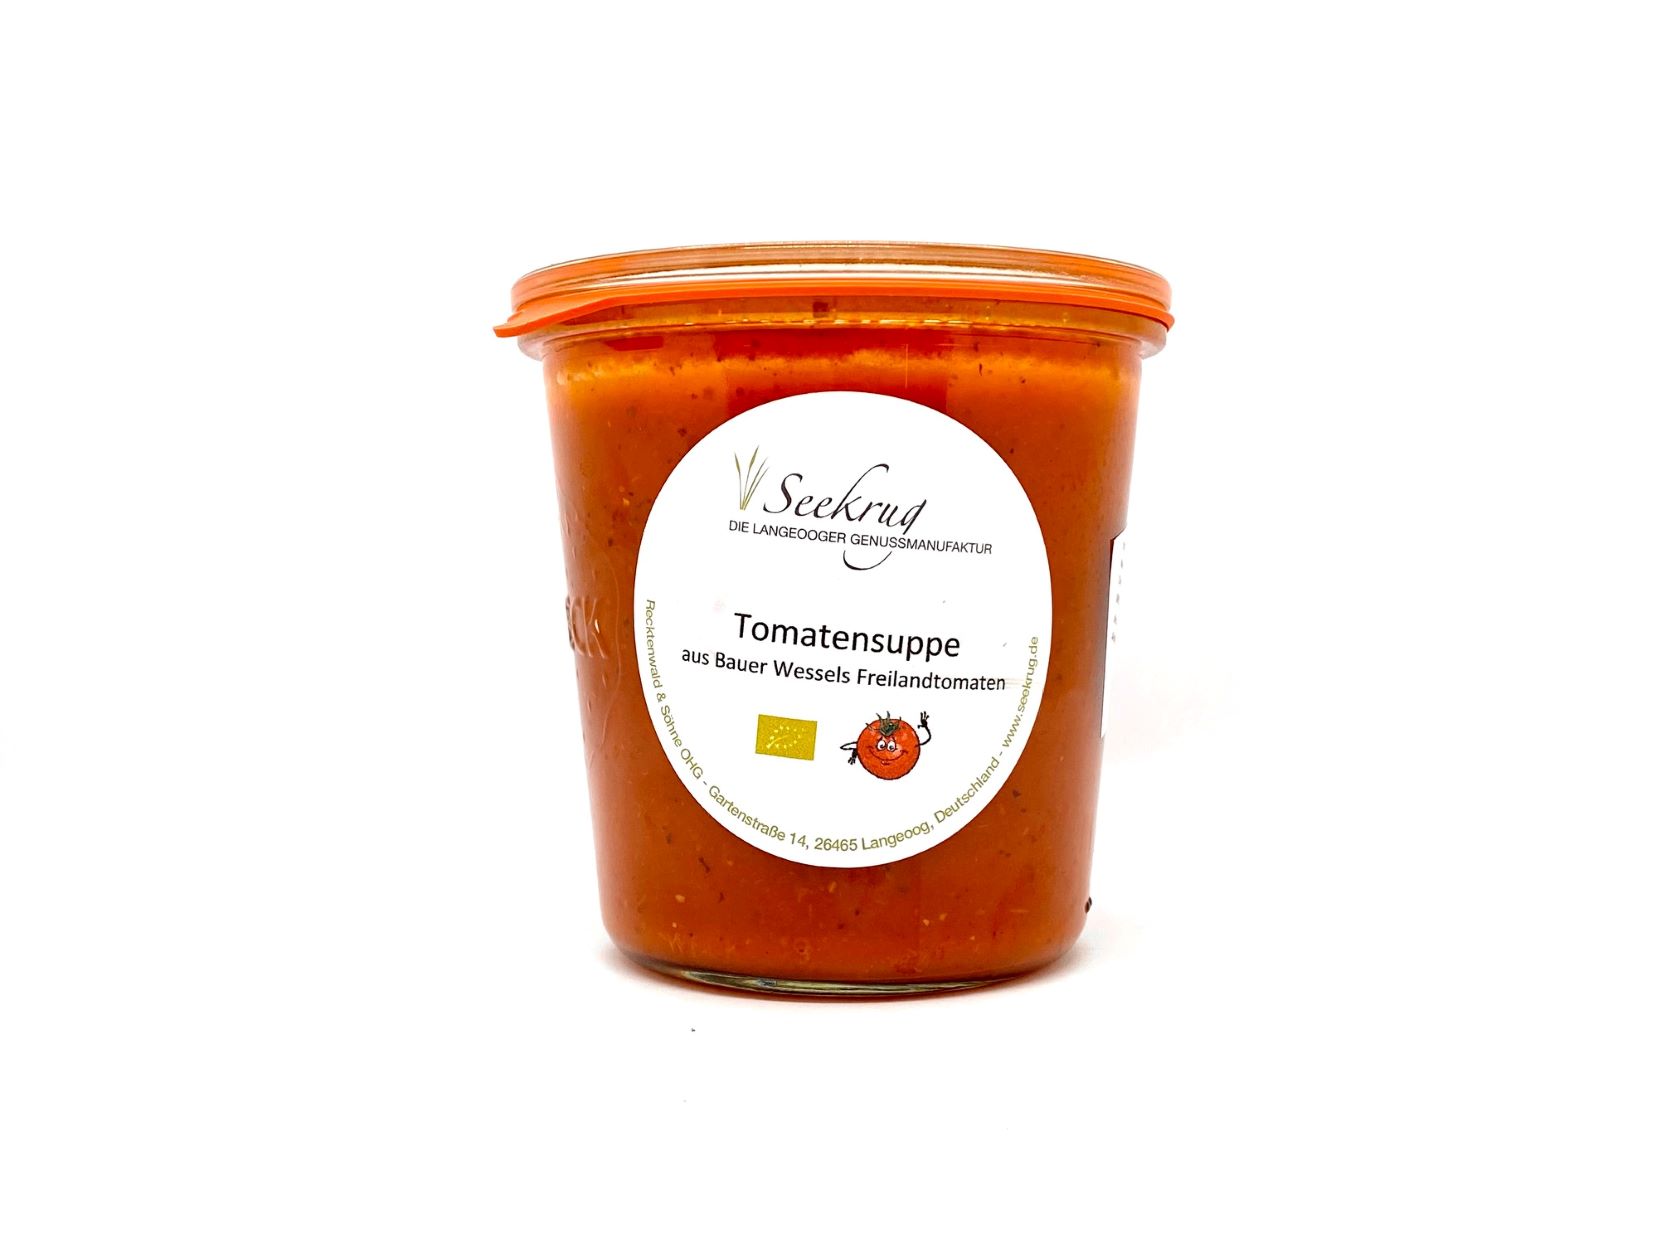 Tomatensuppe von Bauer Wessels Freilandtomaten - 500g (vegan)